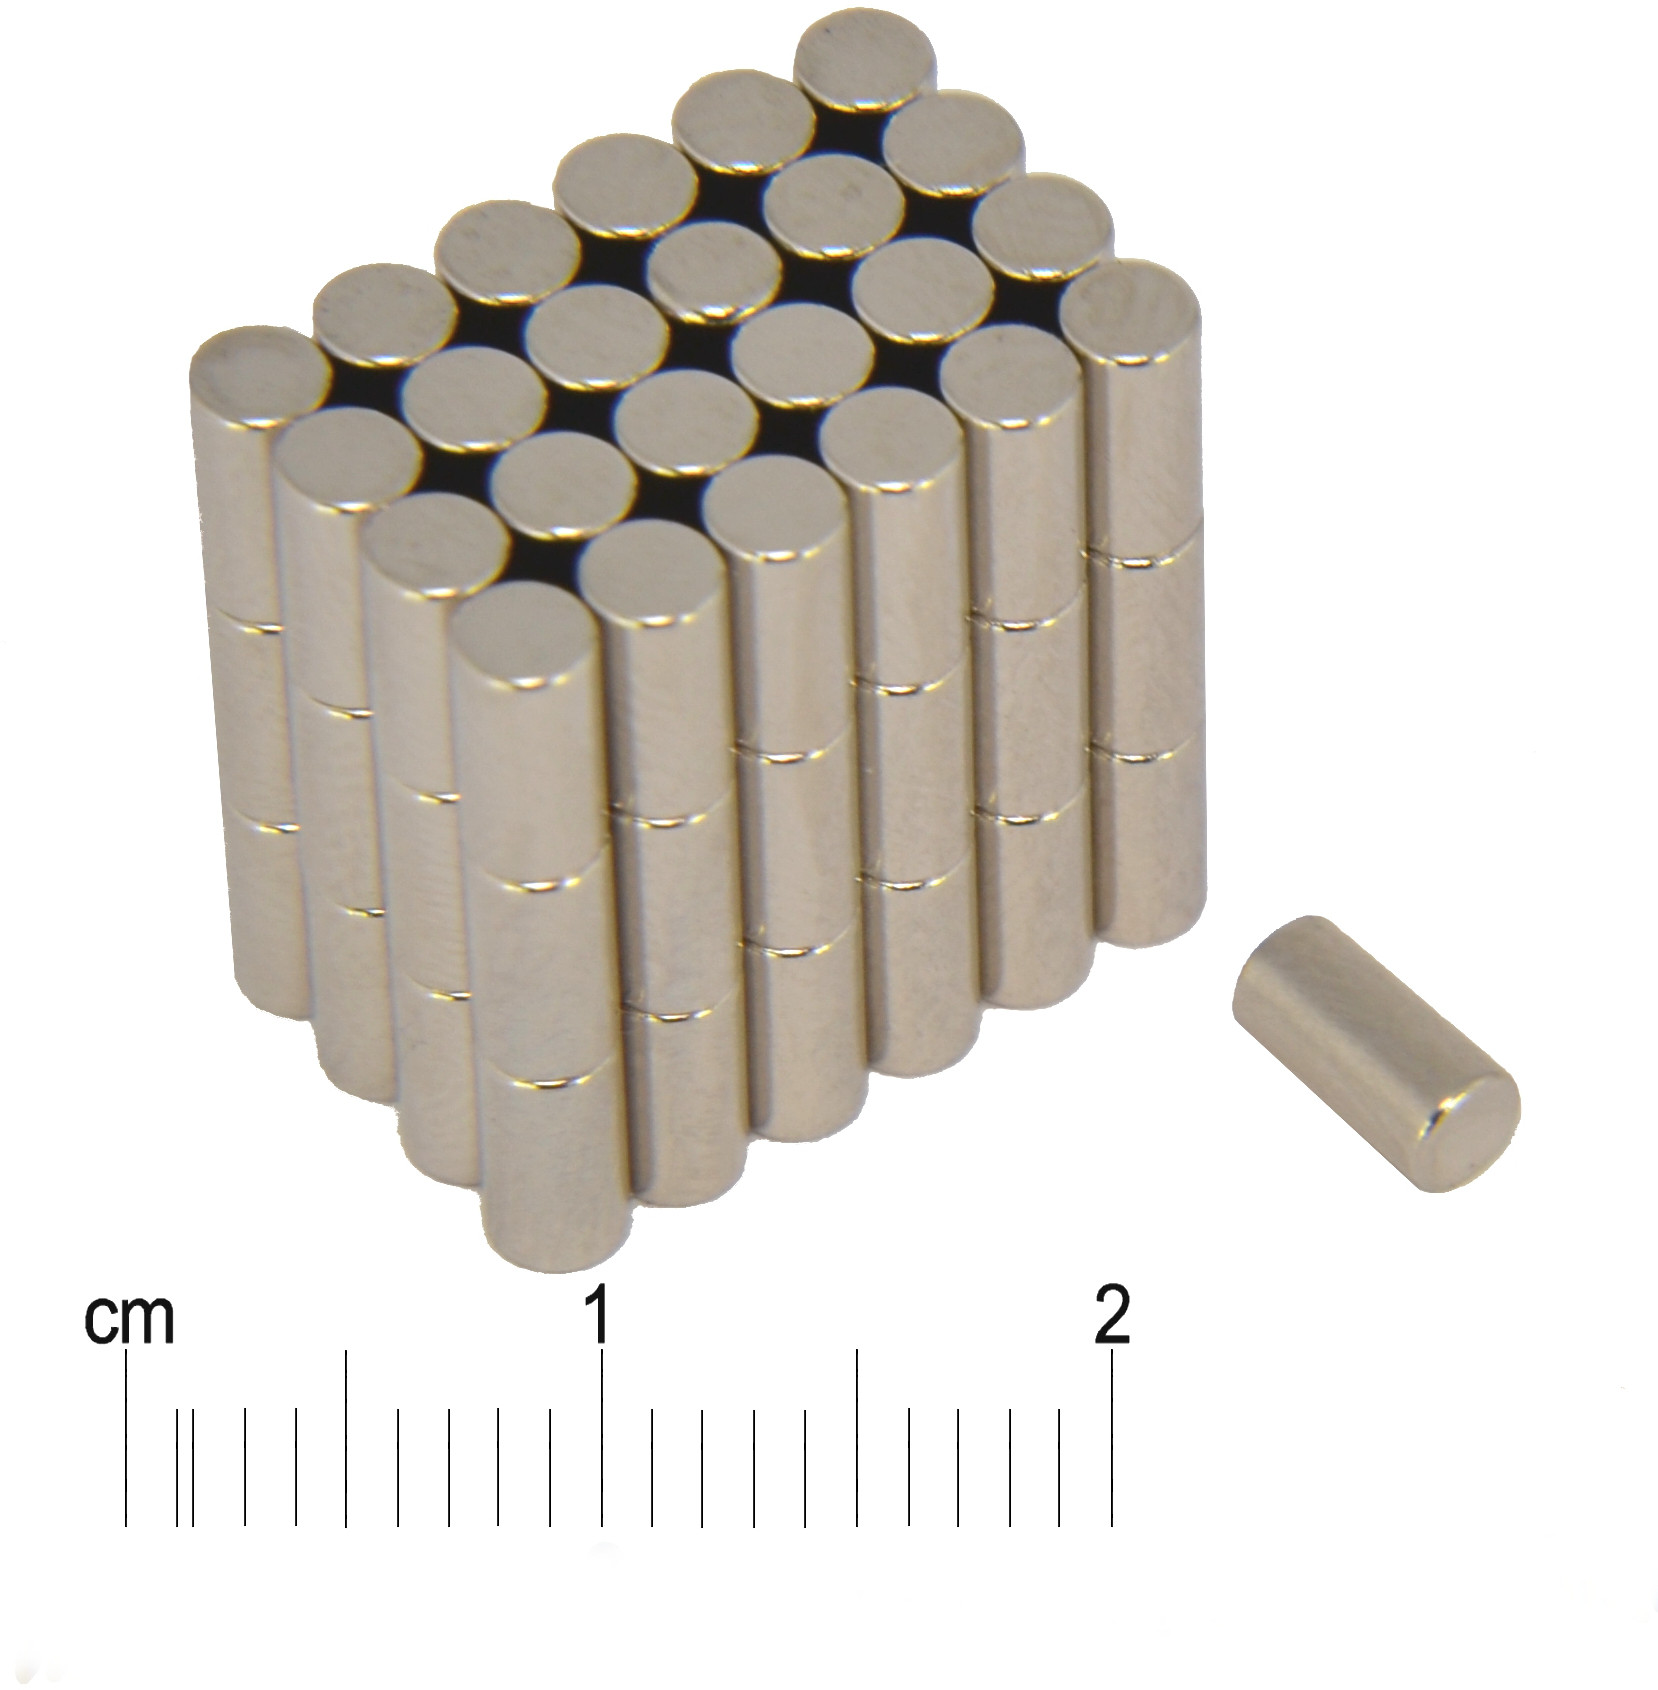 Mały magnes — średnica ⌀3 mm, wysokość 6 mm